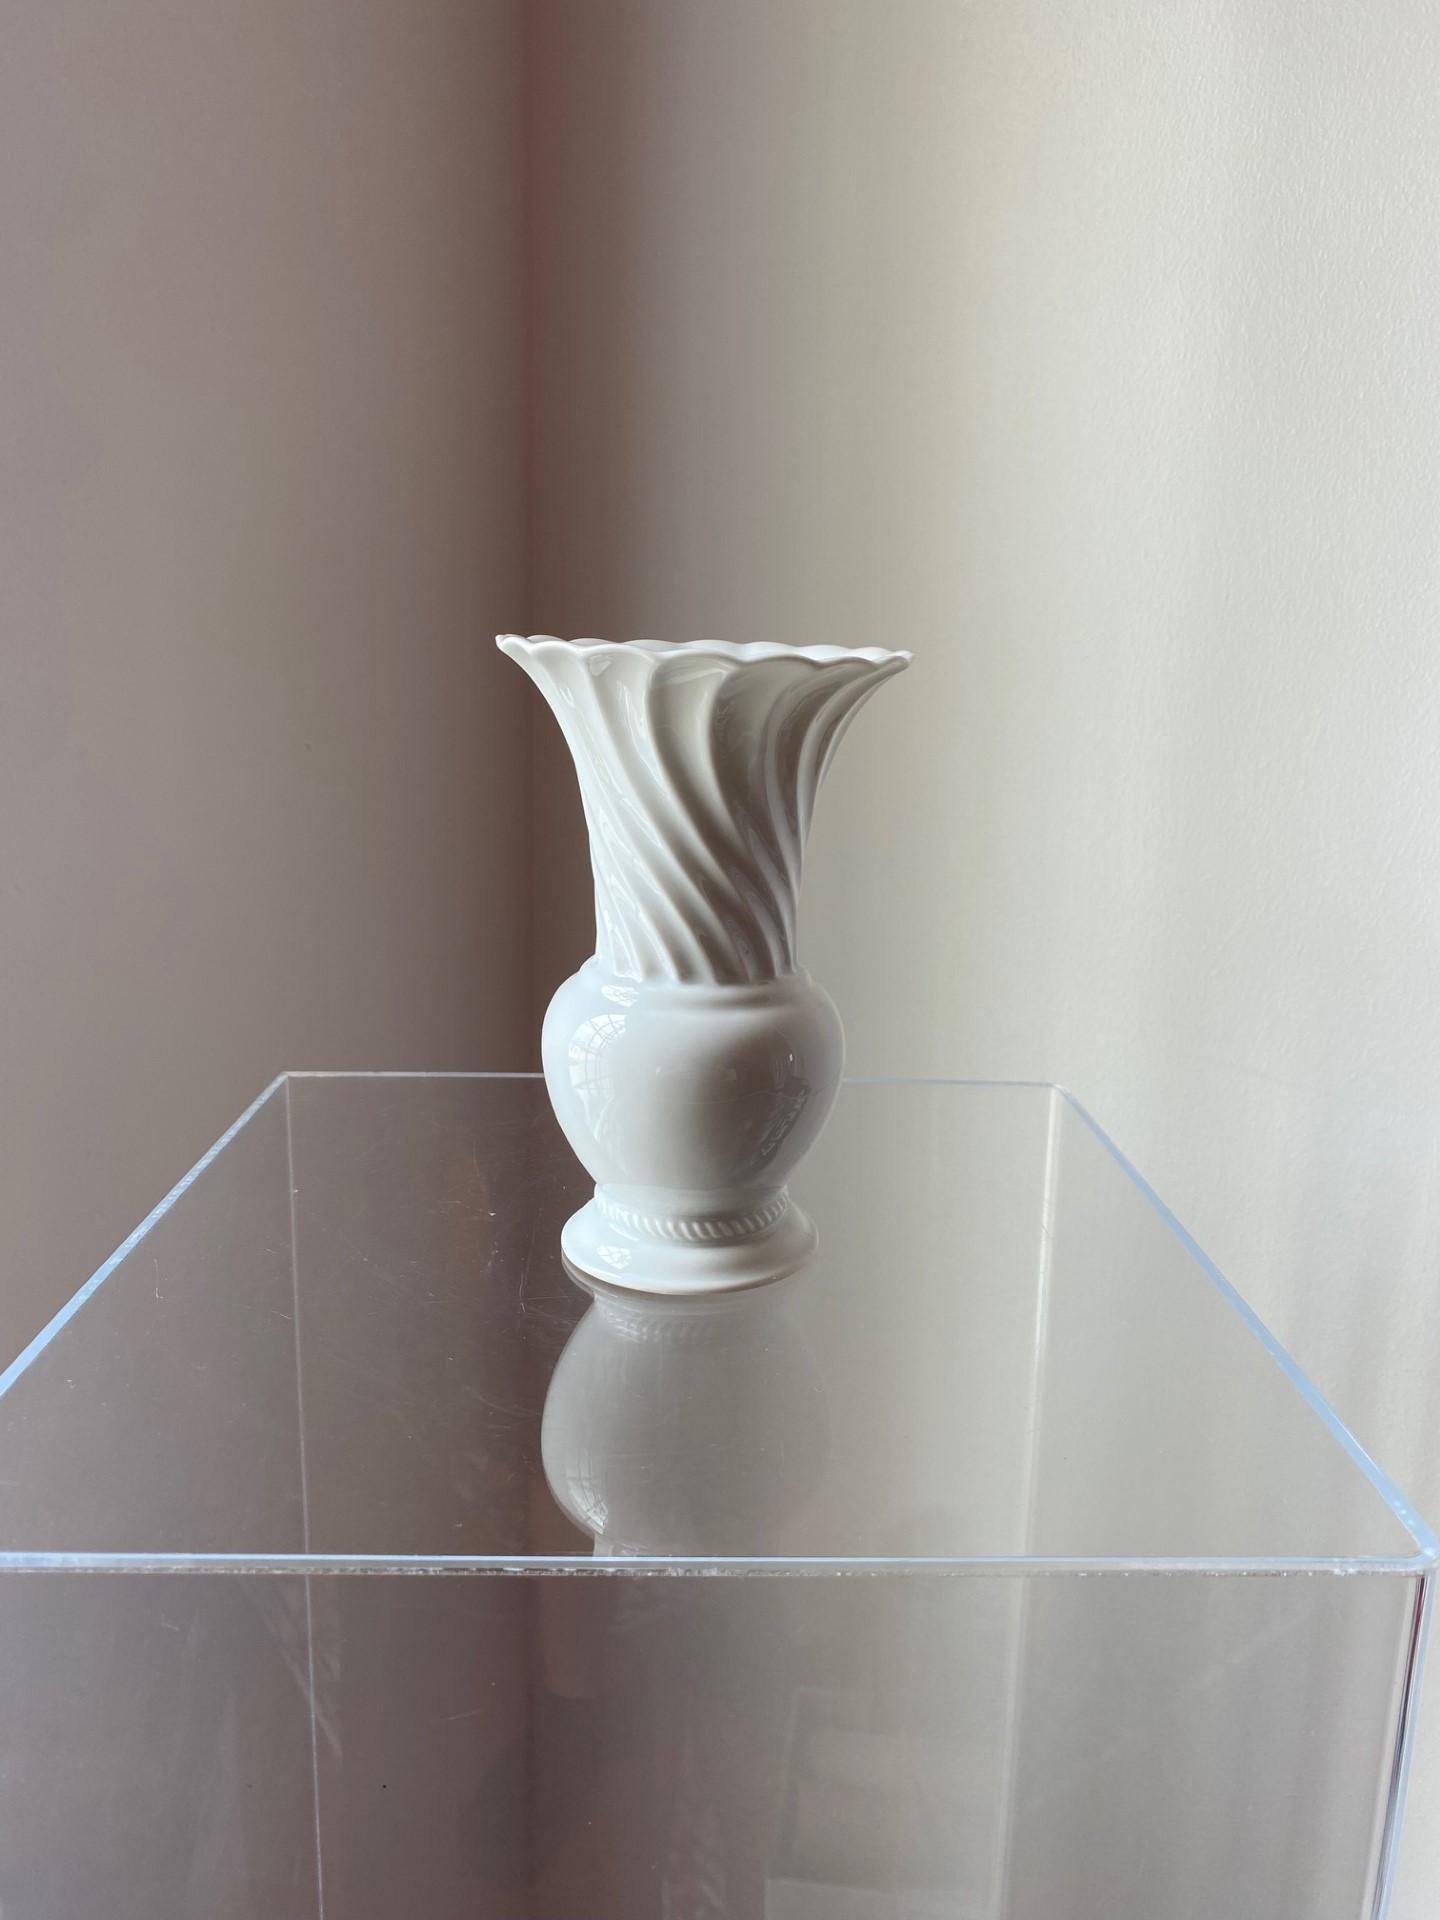 Schöne Porzellanvase von Rosenthal.  Dieses Stück wird in Deutschland hergestellt und folgt der Rosenthal-Tradition von klassischem und hochwertigem Porzellan.  Das schlichte, ausgestellte und geriffelte Design ist klassisch und minimalistisch.  Die